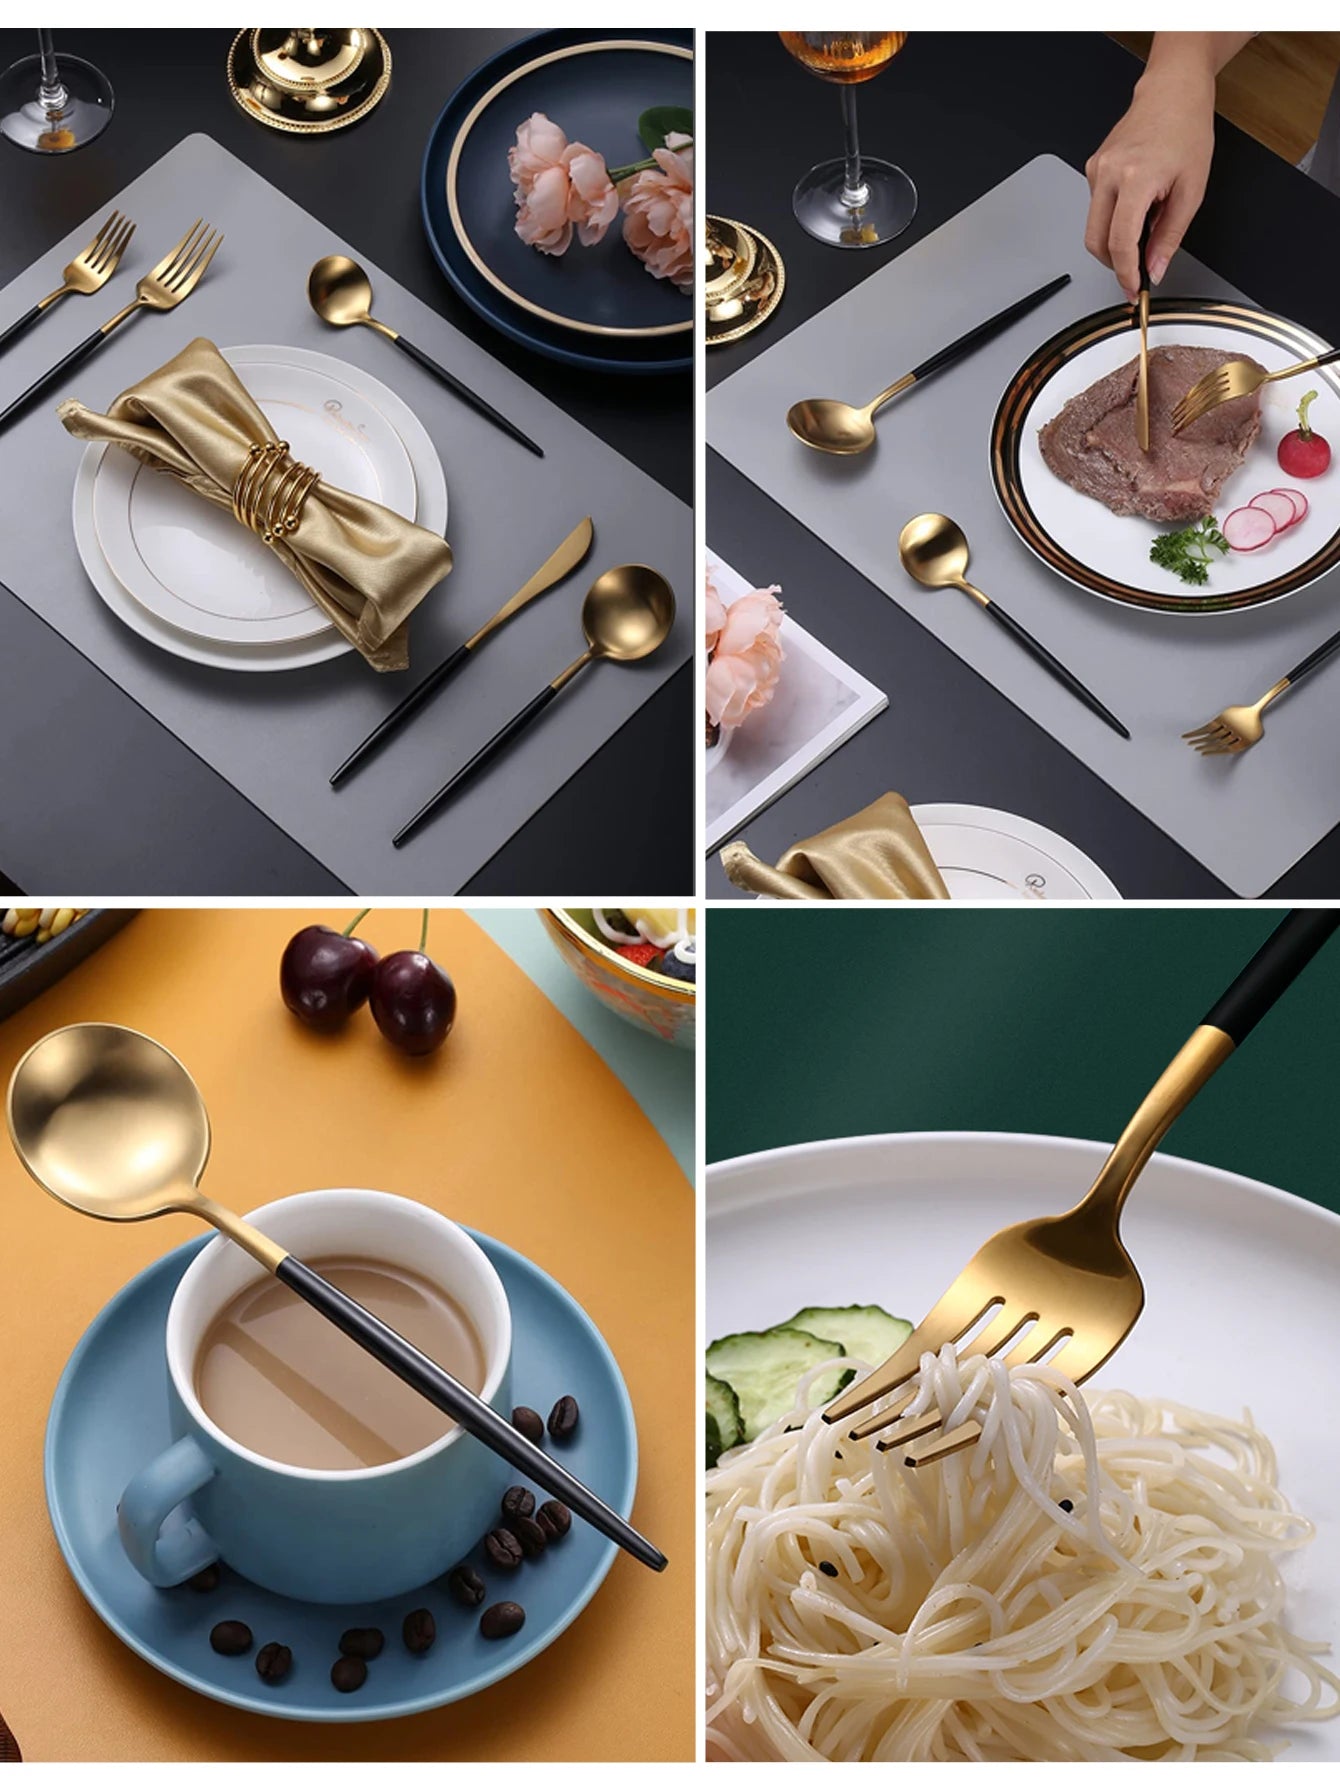 24Pcs Stainless Steel Dinnerware Set Black Gold Cutlery Spoon Fork Knife Western Cutleri Silverware Flatware Tableware Supplies